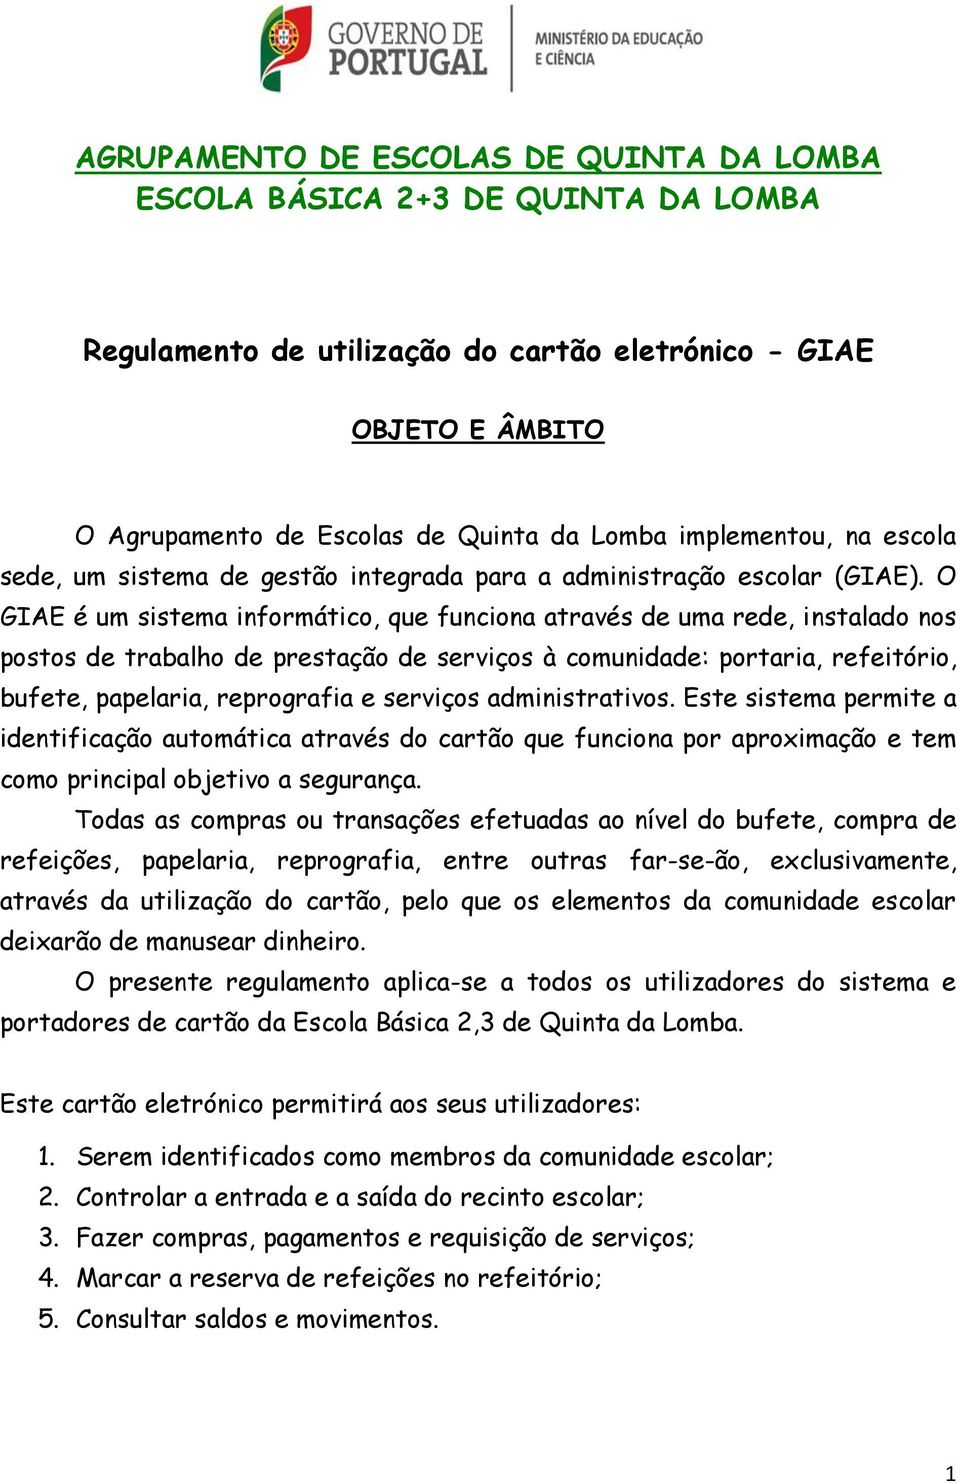 AGRUPAMENTO DE ESCOLAS DE QUINTA DA LOMBA ESCOLA BÁSICA 2+3 DE QUINTA DA  LOMBA. Regulamento de utilização do cartão eletrónico - GIAE - PDF Free  Download